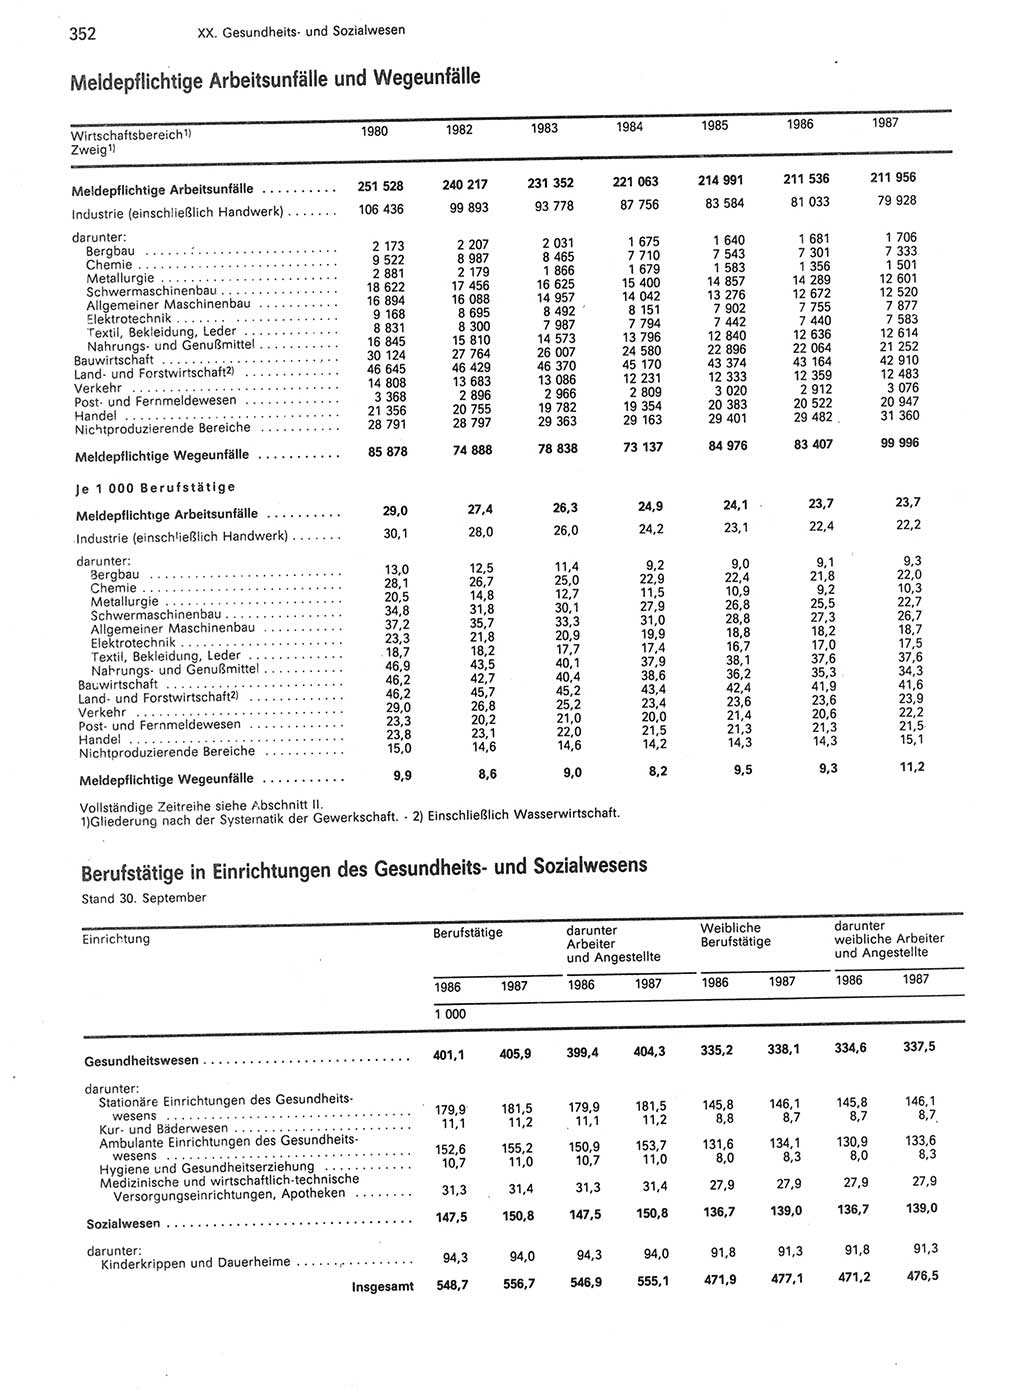 Statistisches Jahrbuch der Deutschen Demokratischen Republik (DDR) 1988, Seite 352 (Stat. Jb. DDR 1988, S. 352)